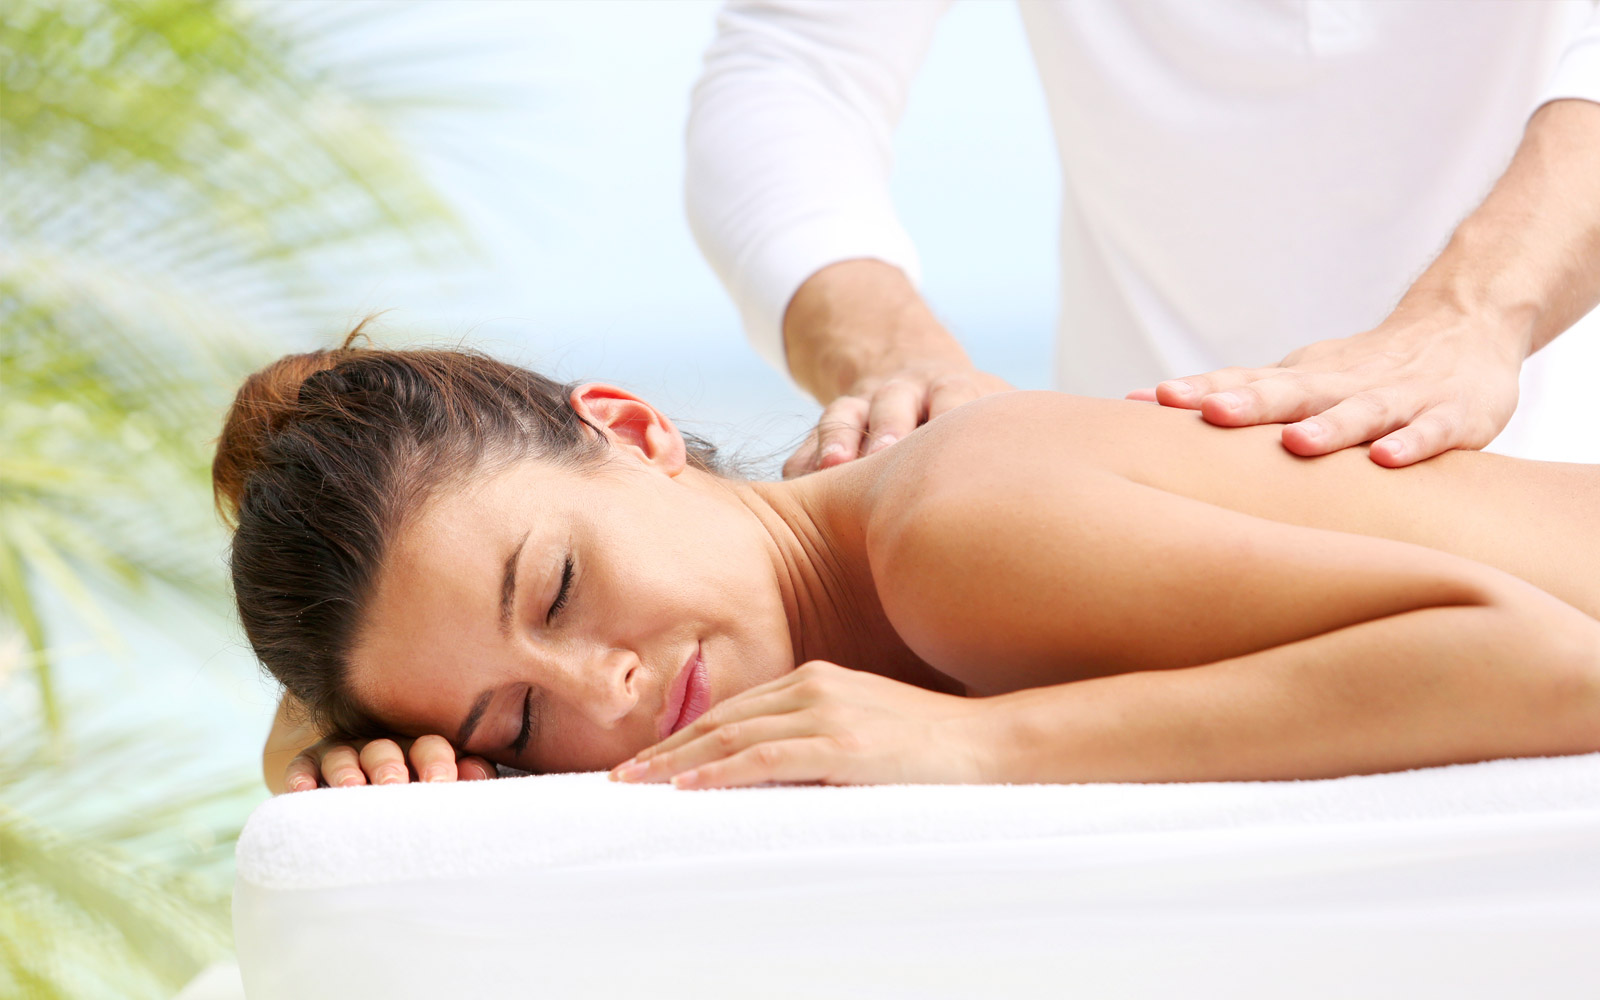 Dubai Fun Massage one of the best massage services in Dubai, go for a Massa...